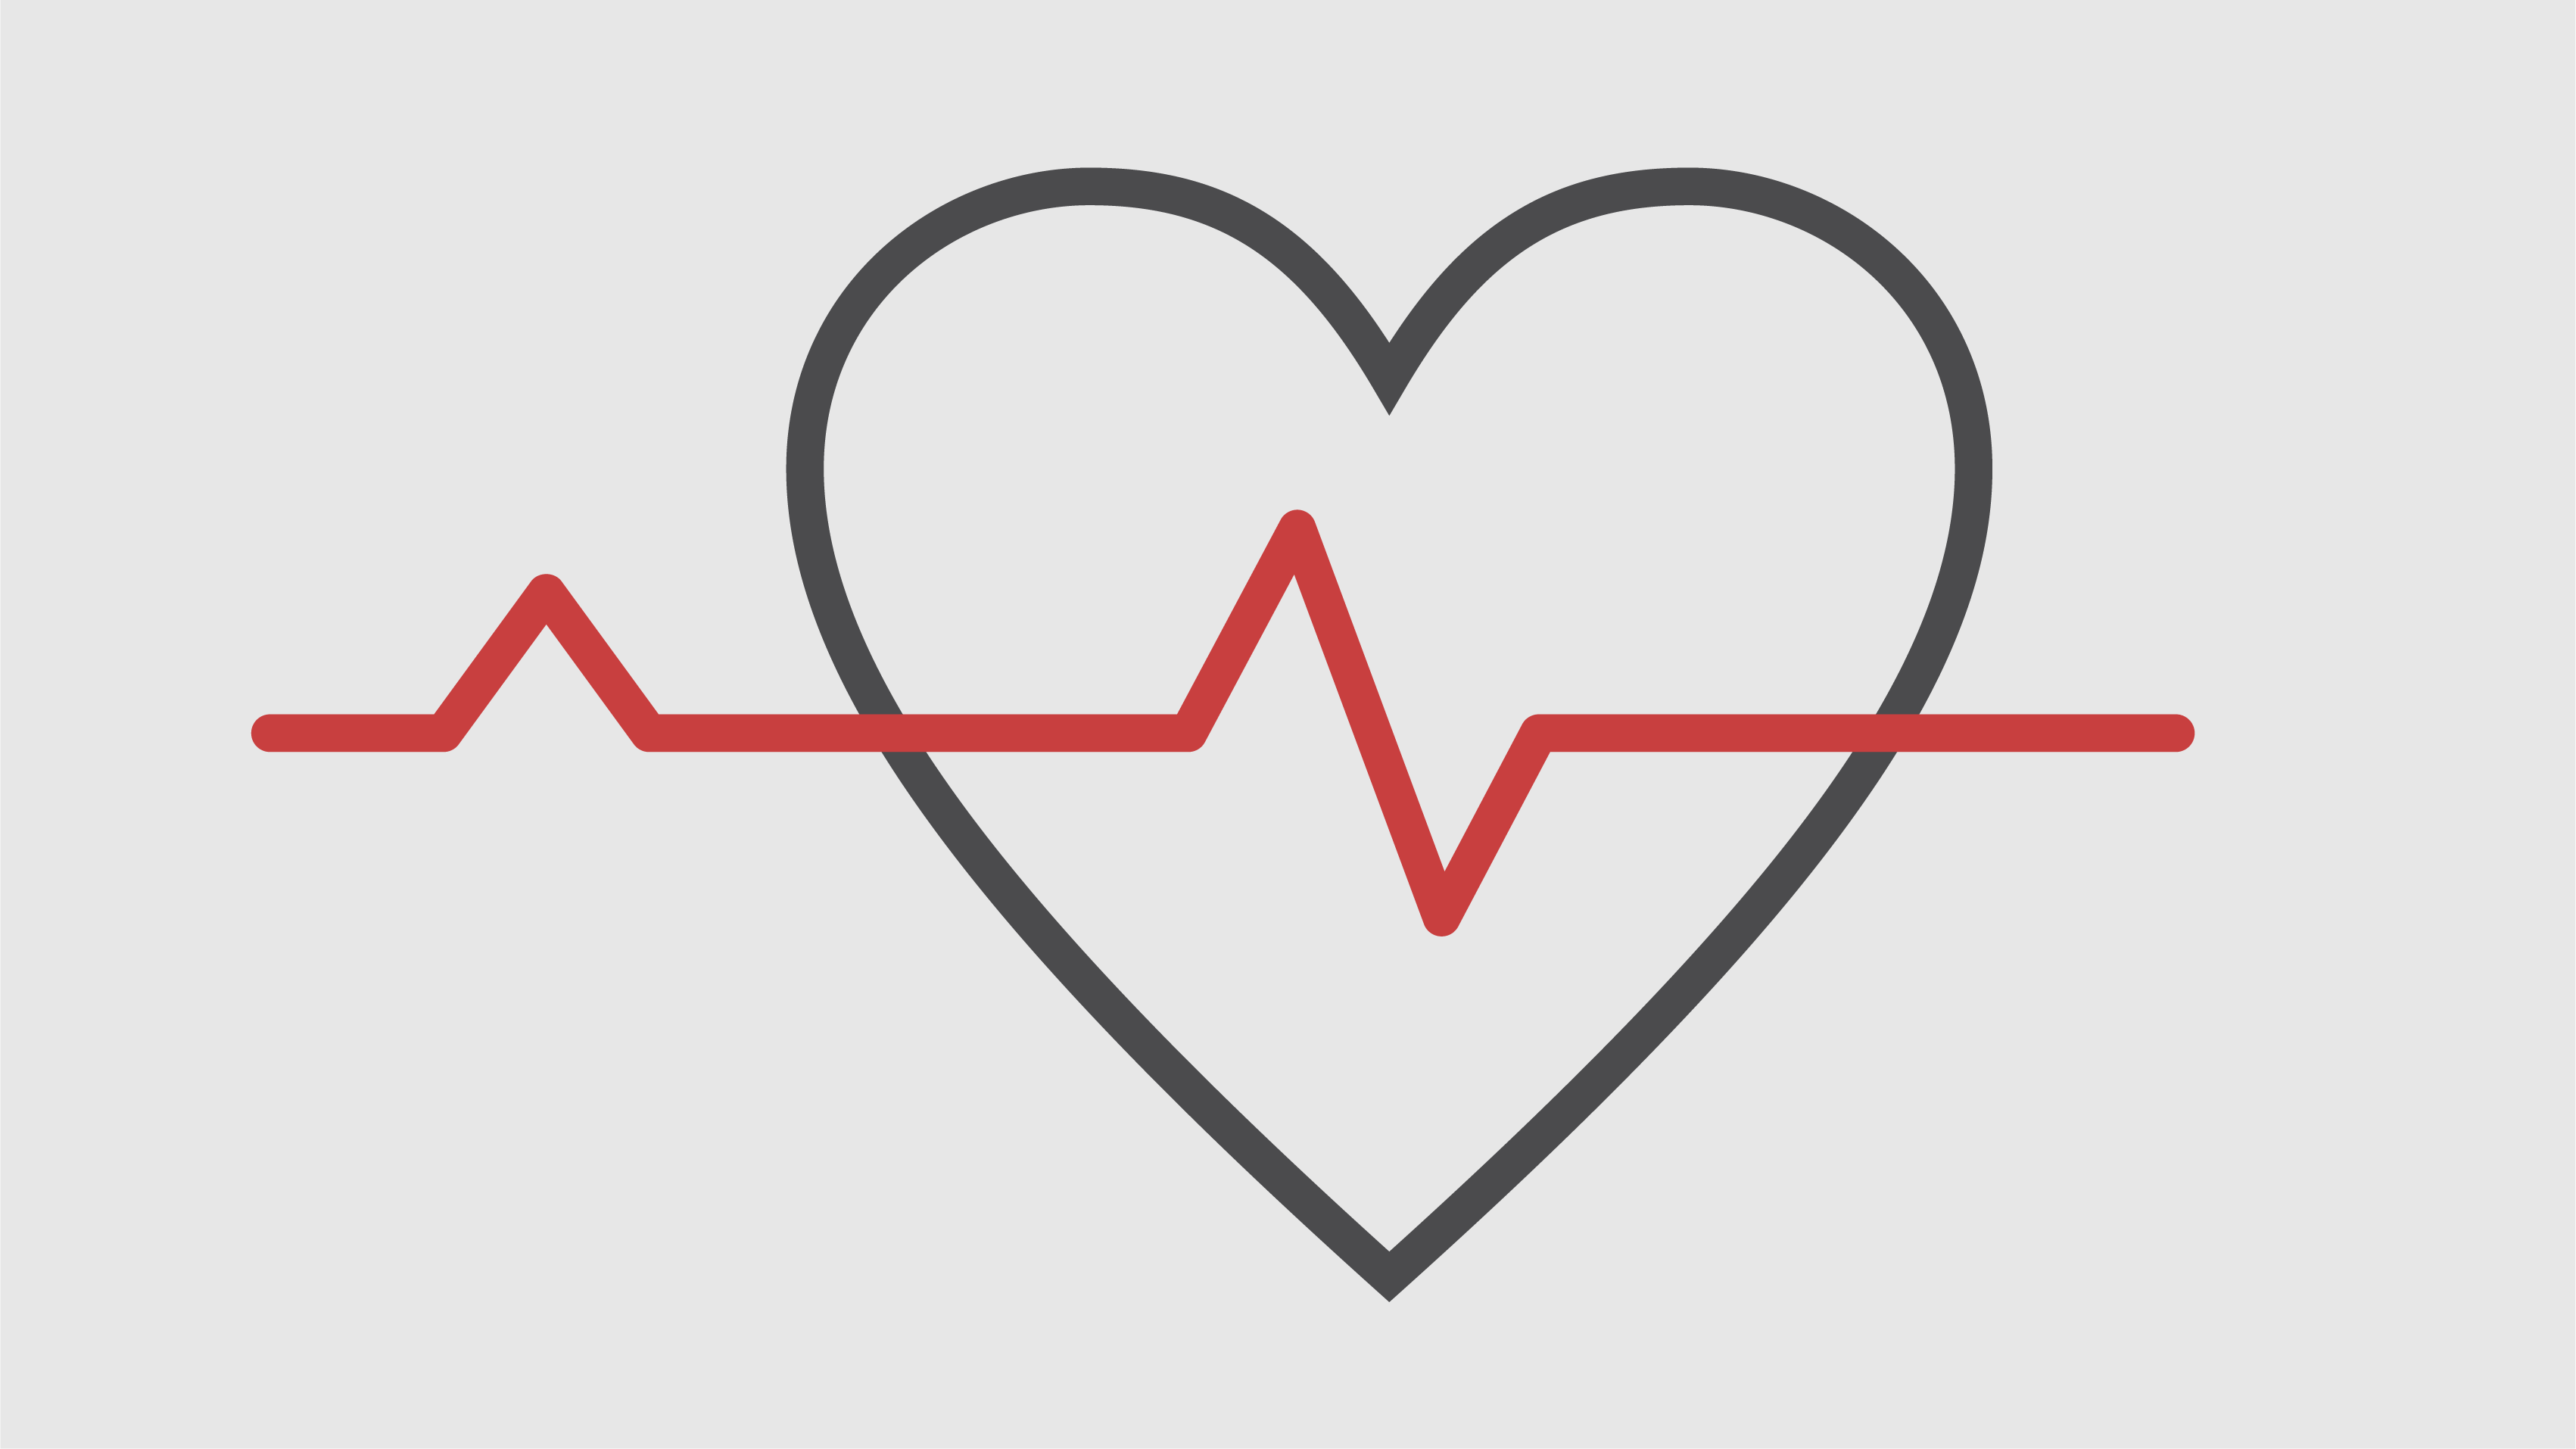 Piktogramme eines Herzens mit einer EKG-Linie darüber